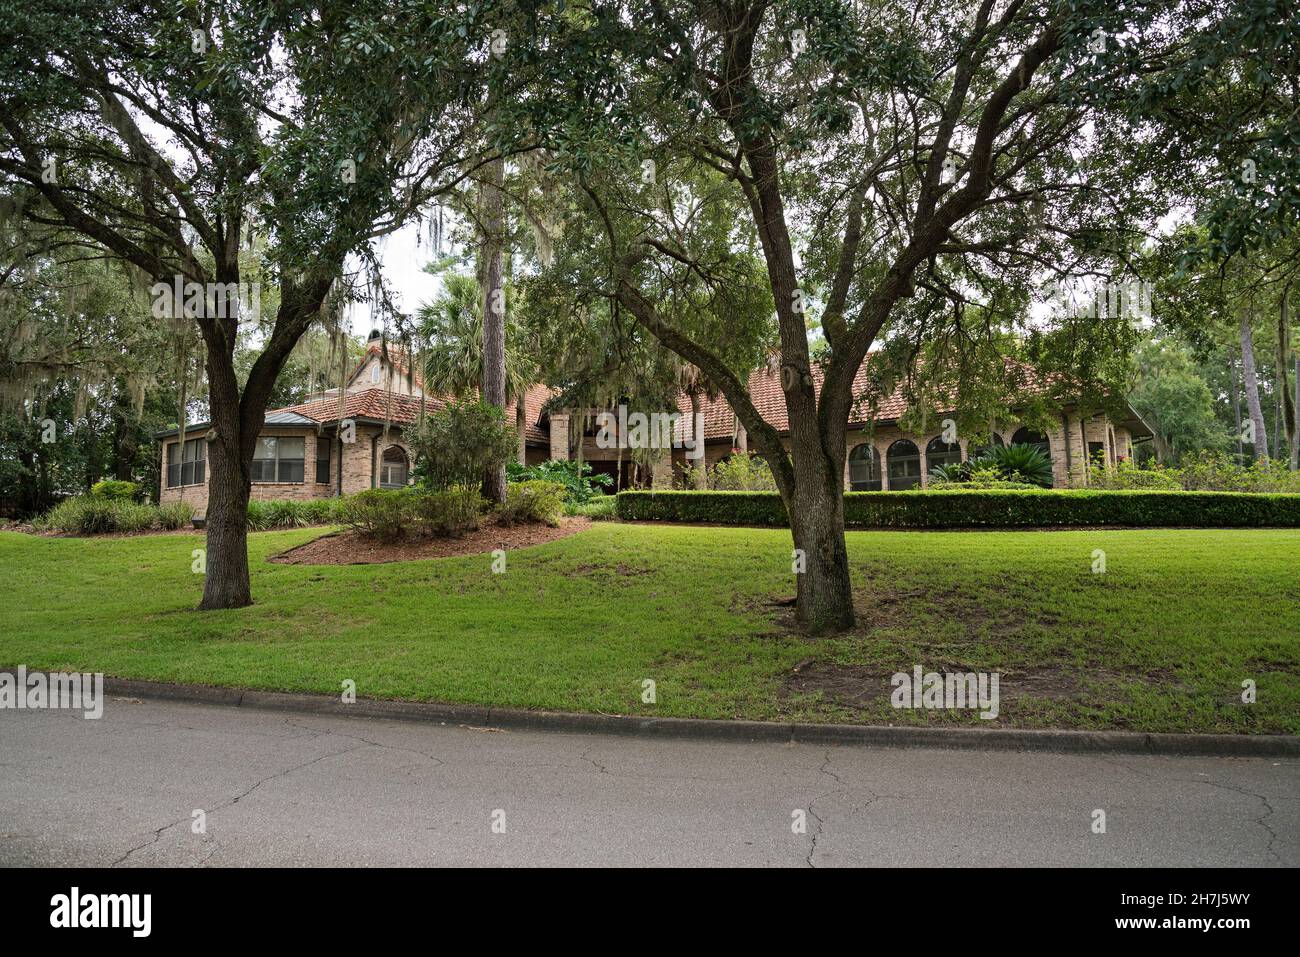 Architettura d'affari insolita a Gainesville, Florida. Un business che sembra invitante come una bella casa paesaggistica. Foto Stock